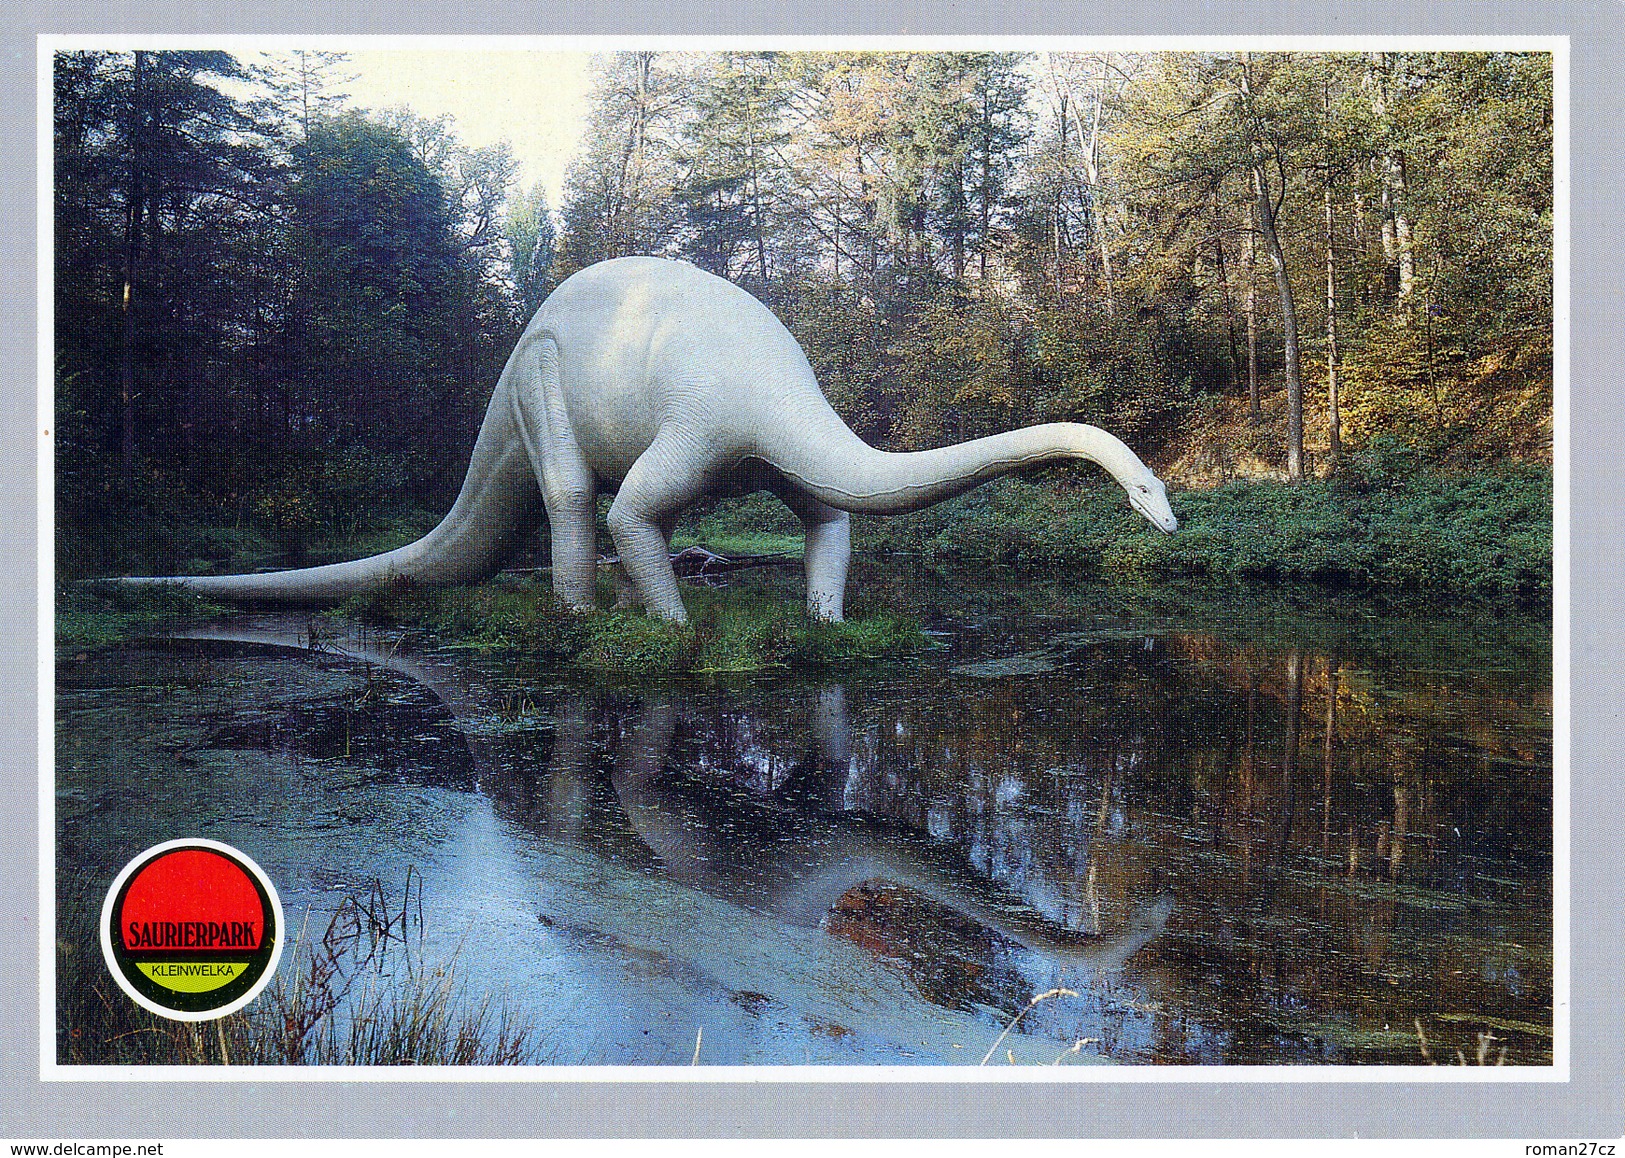 Saurierpark Kleinwelka, Germany, Ca. 1980s, Dinosaur - Diplodocus - Bautzen